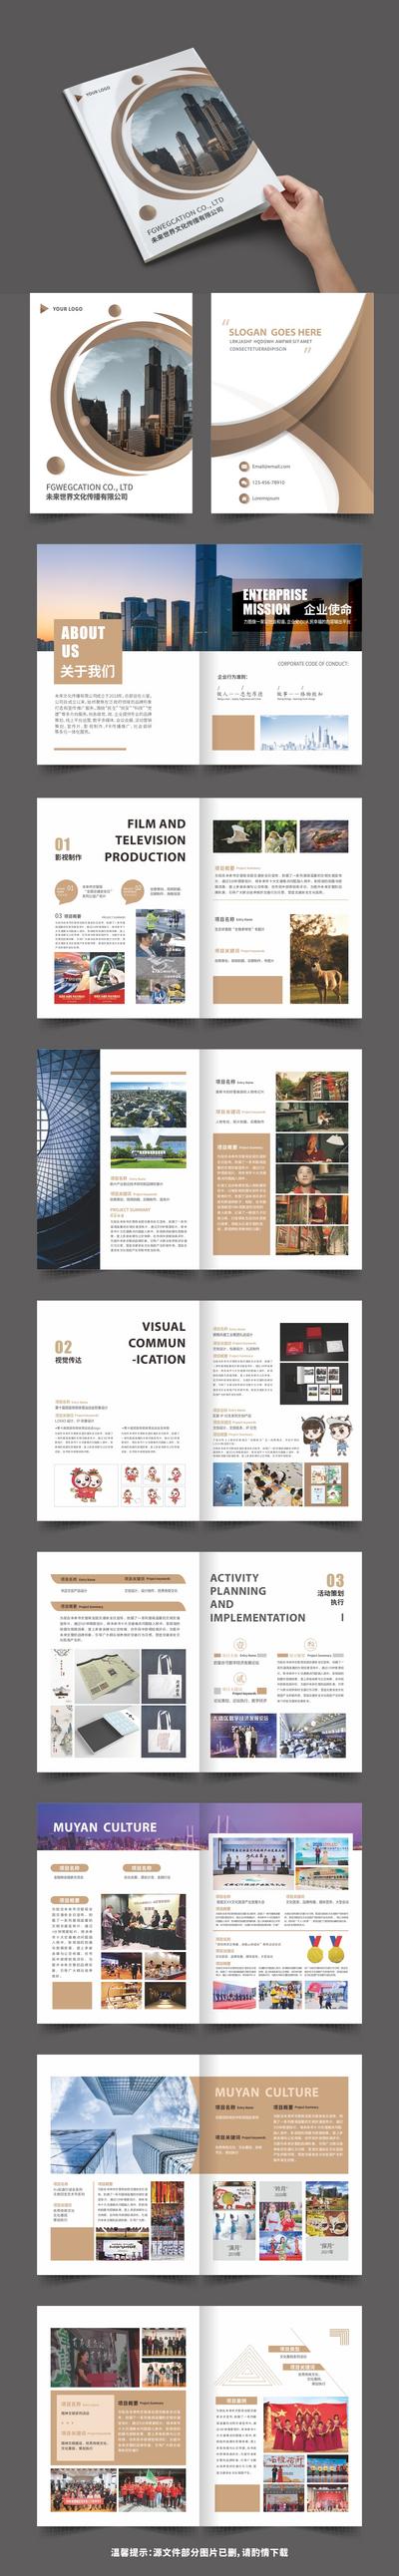 南门网 画册 宣传册 企业 手册 文化 营销 排版